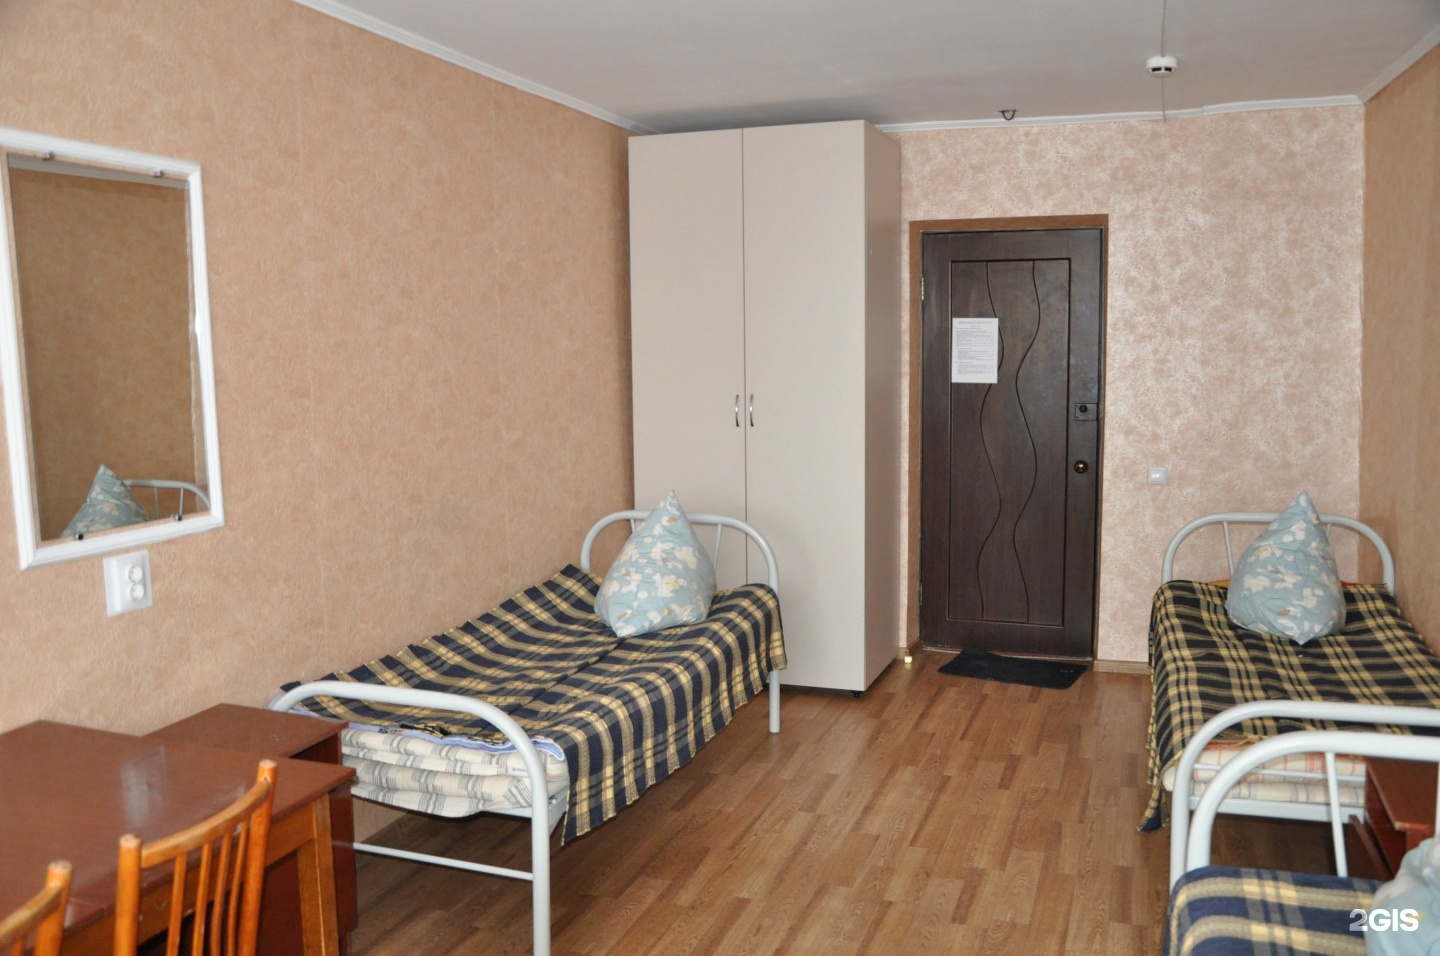 Комнаты в общежитиях в барнауле. Общежитие 4 СИБУПК Новосибирск. Общага гостиничного типа. Комната в общежитии гостиничного типа. Блочная комната в общежитии.